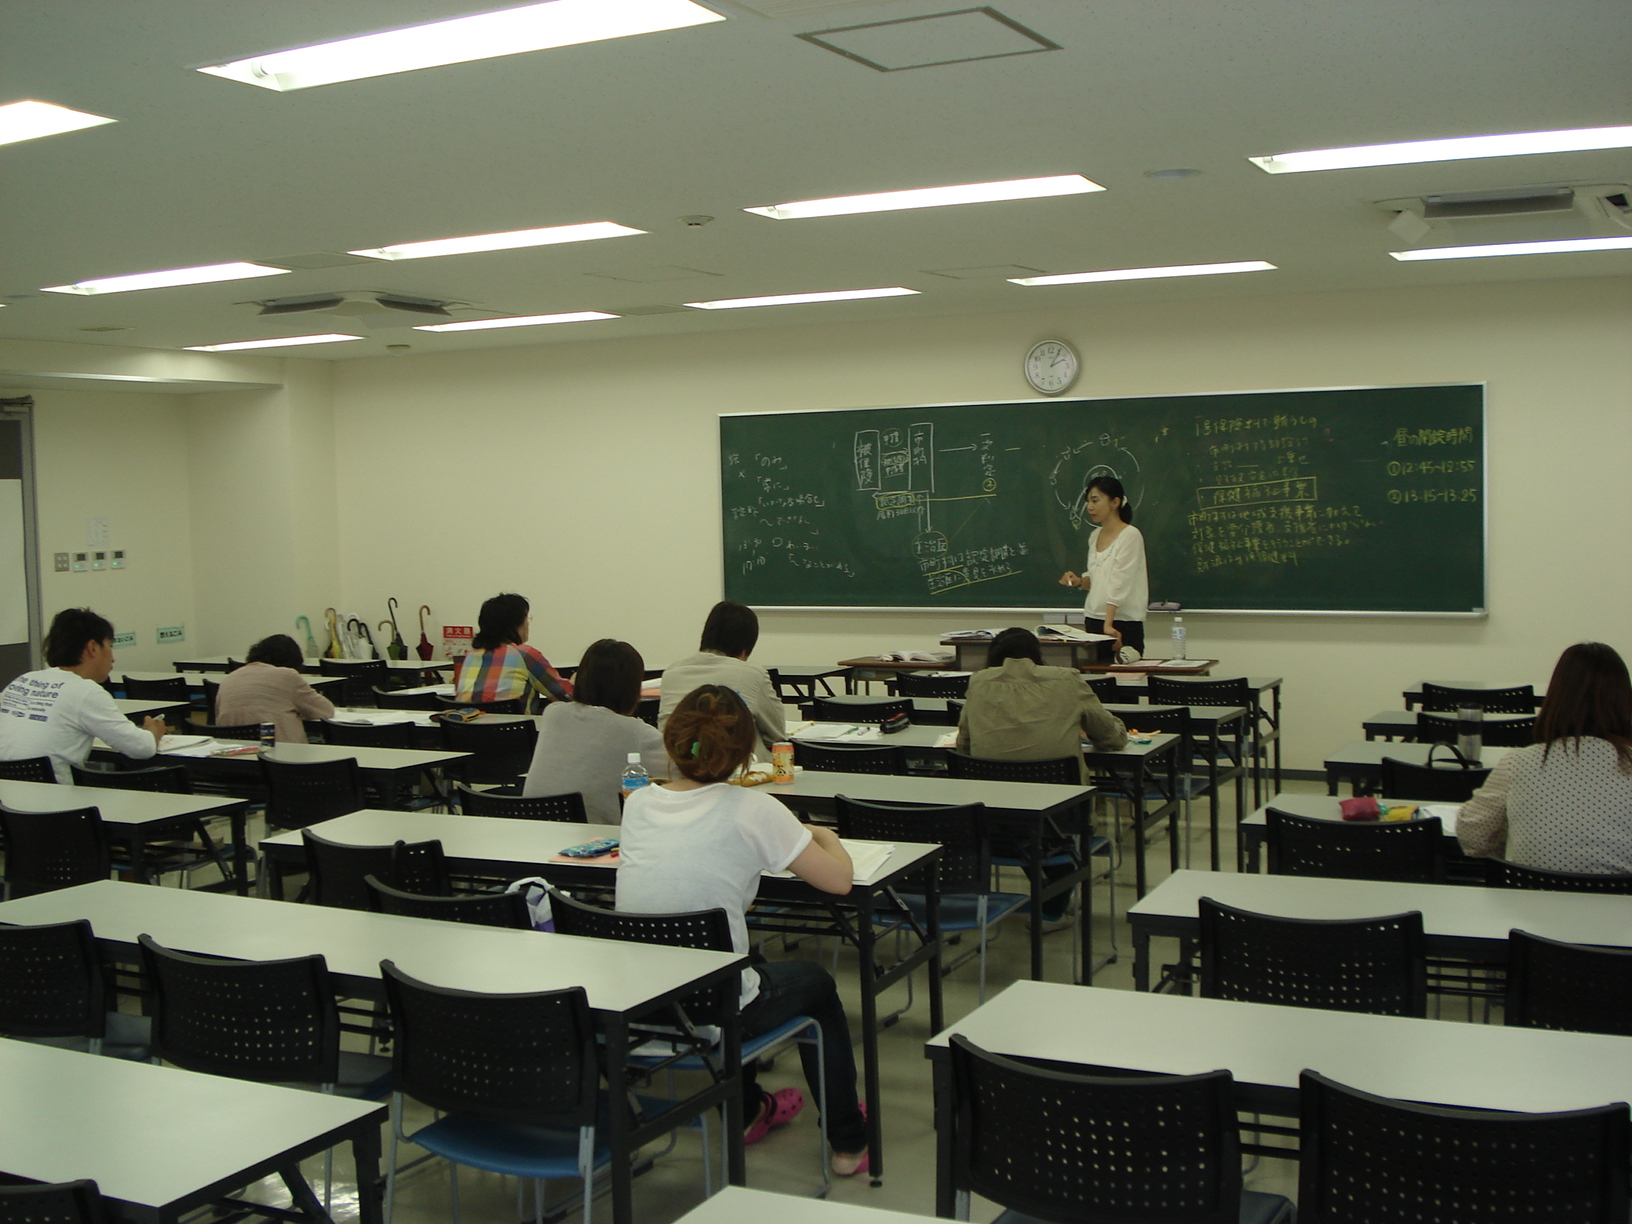 ケアマネジャー 直前講習会開講 東京アカデミー青森校 公務員 教員 各種国家試験対策 のブログ